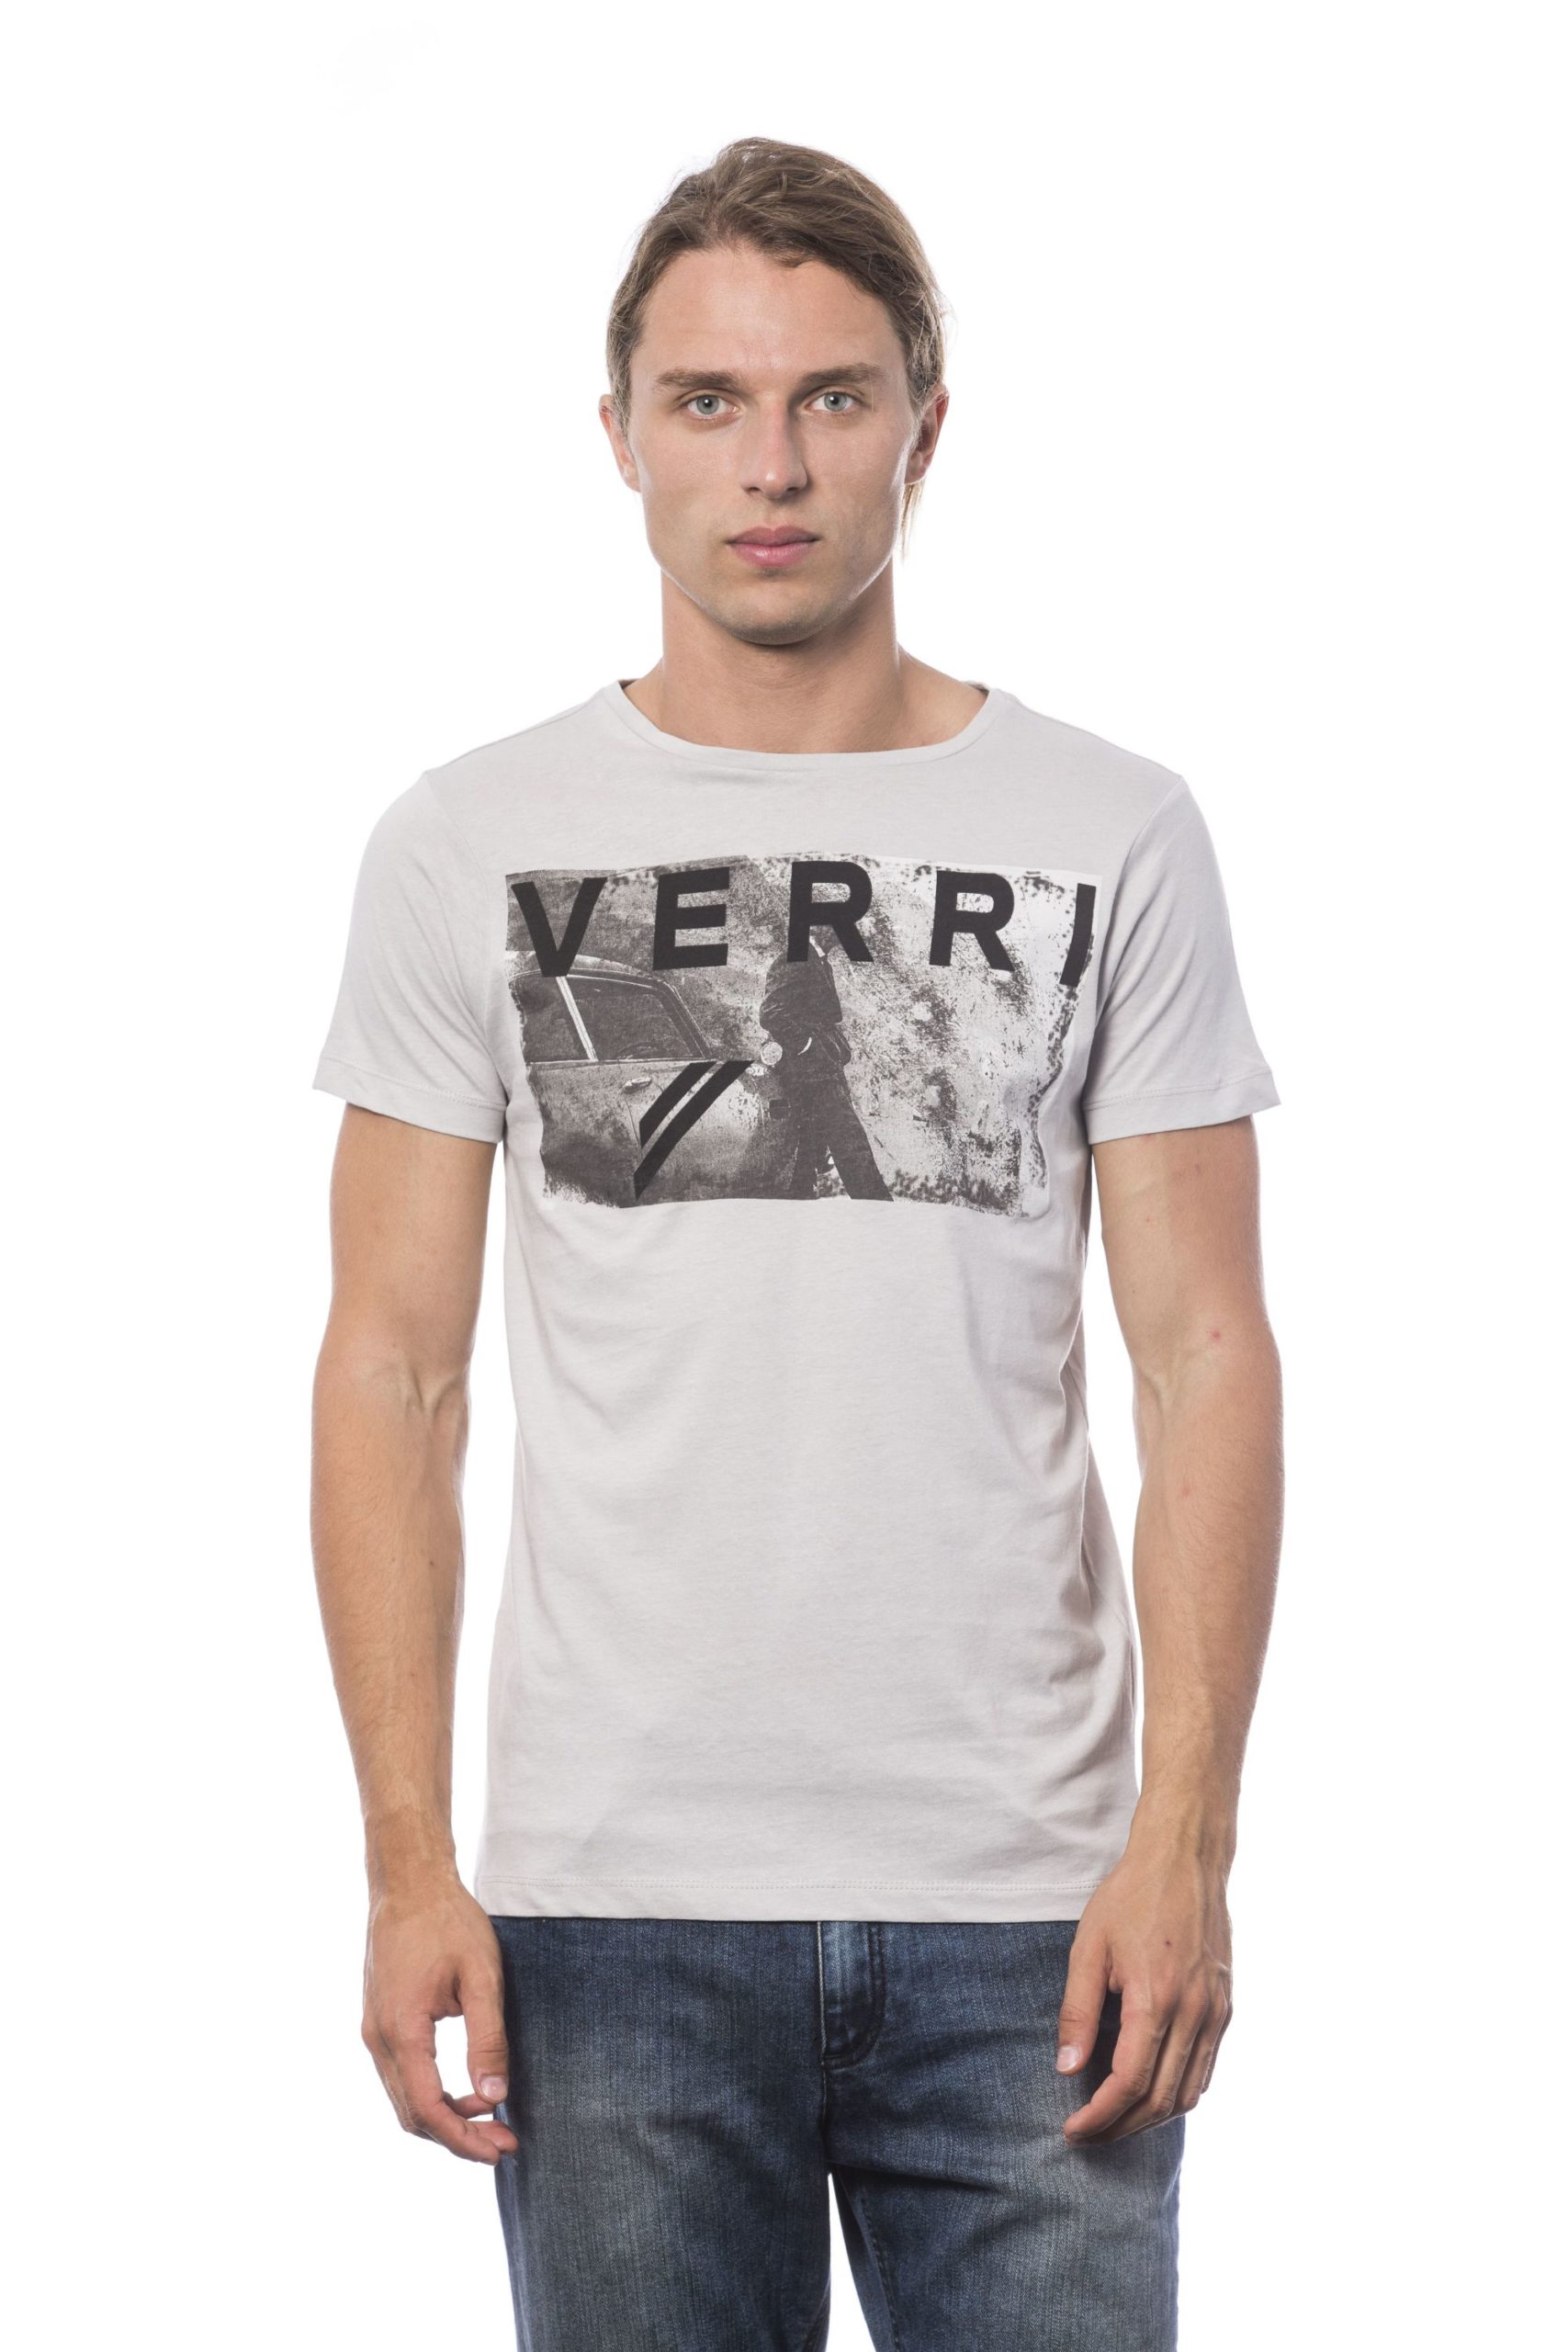 Verri Men's Grigioperla T-Shirt Gray VE685990 - S